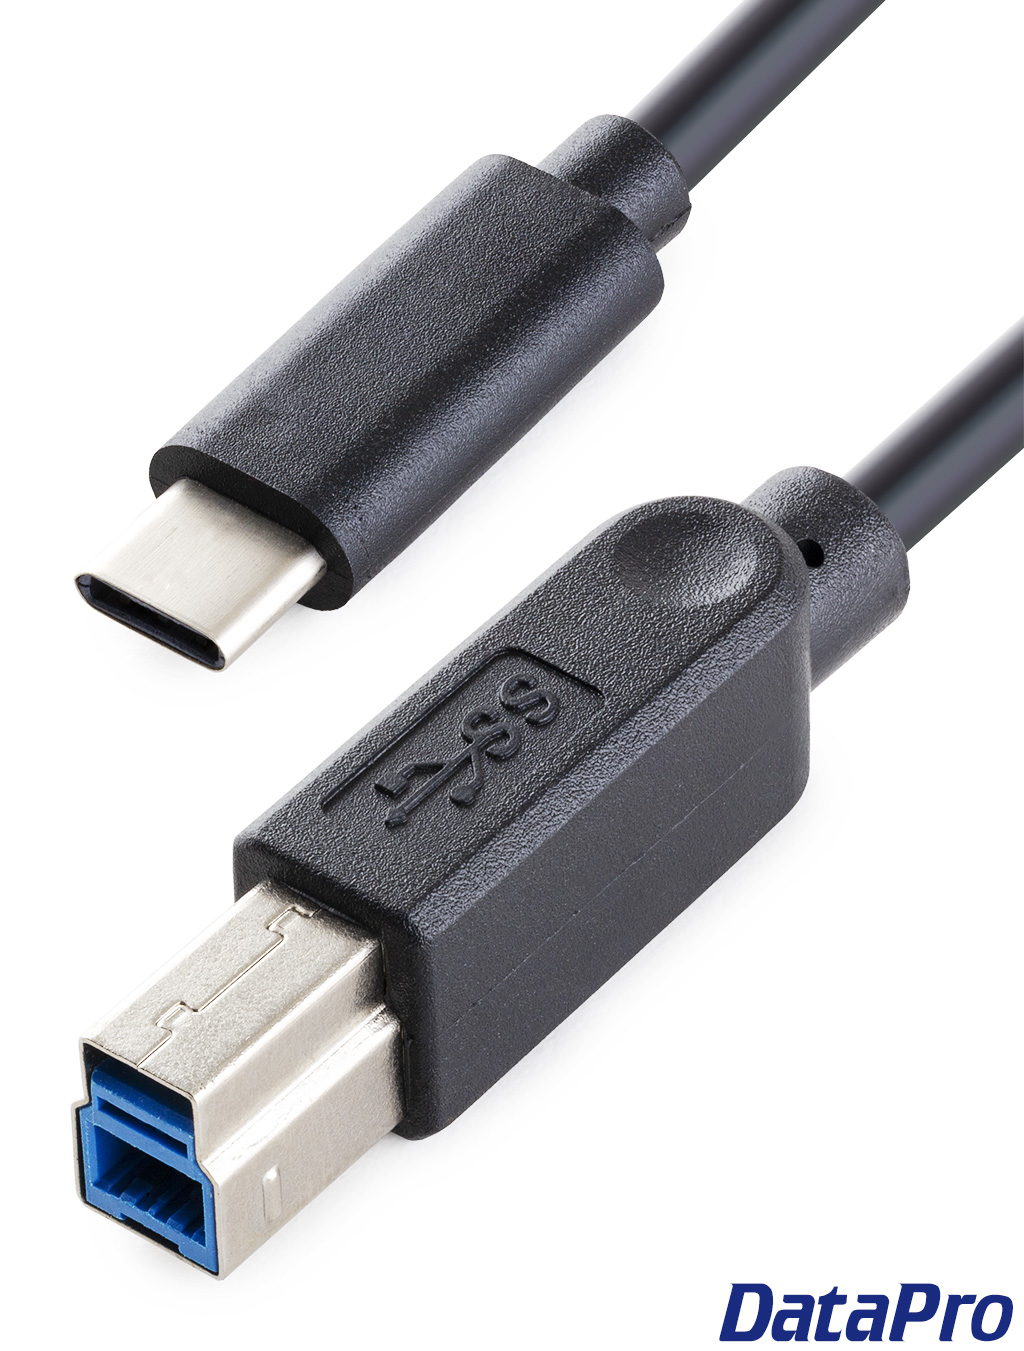 Gimax .usb plug USB male USB socket USB-A male 90 degree bend foot line 